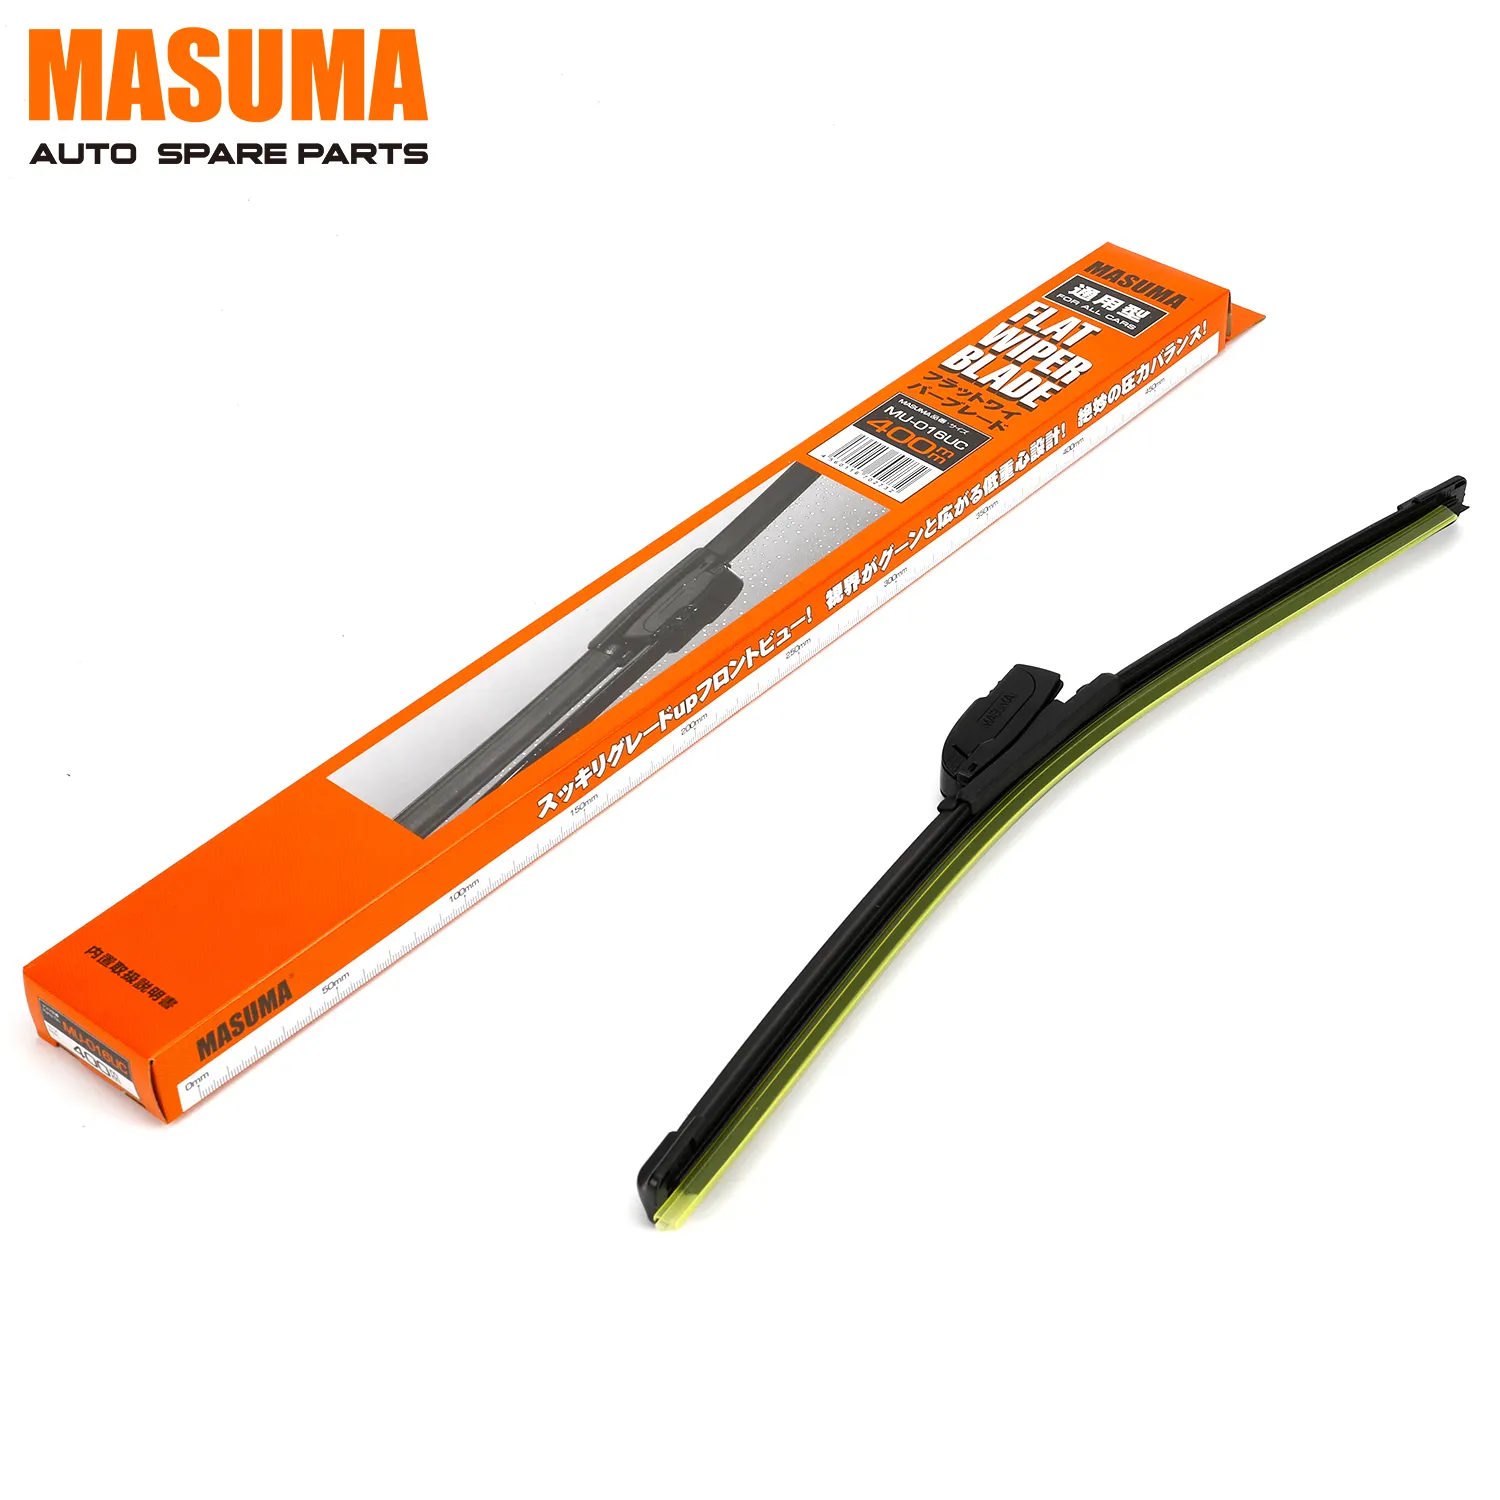 MU-016UC-Hoja de limpiaparabrisas de silicona, accesorio para vehículos, fabricante Masma